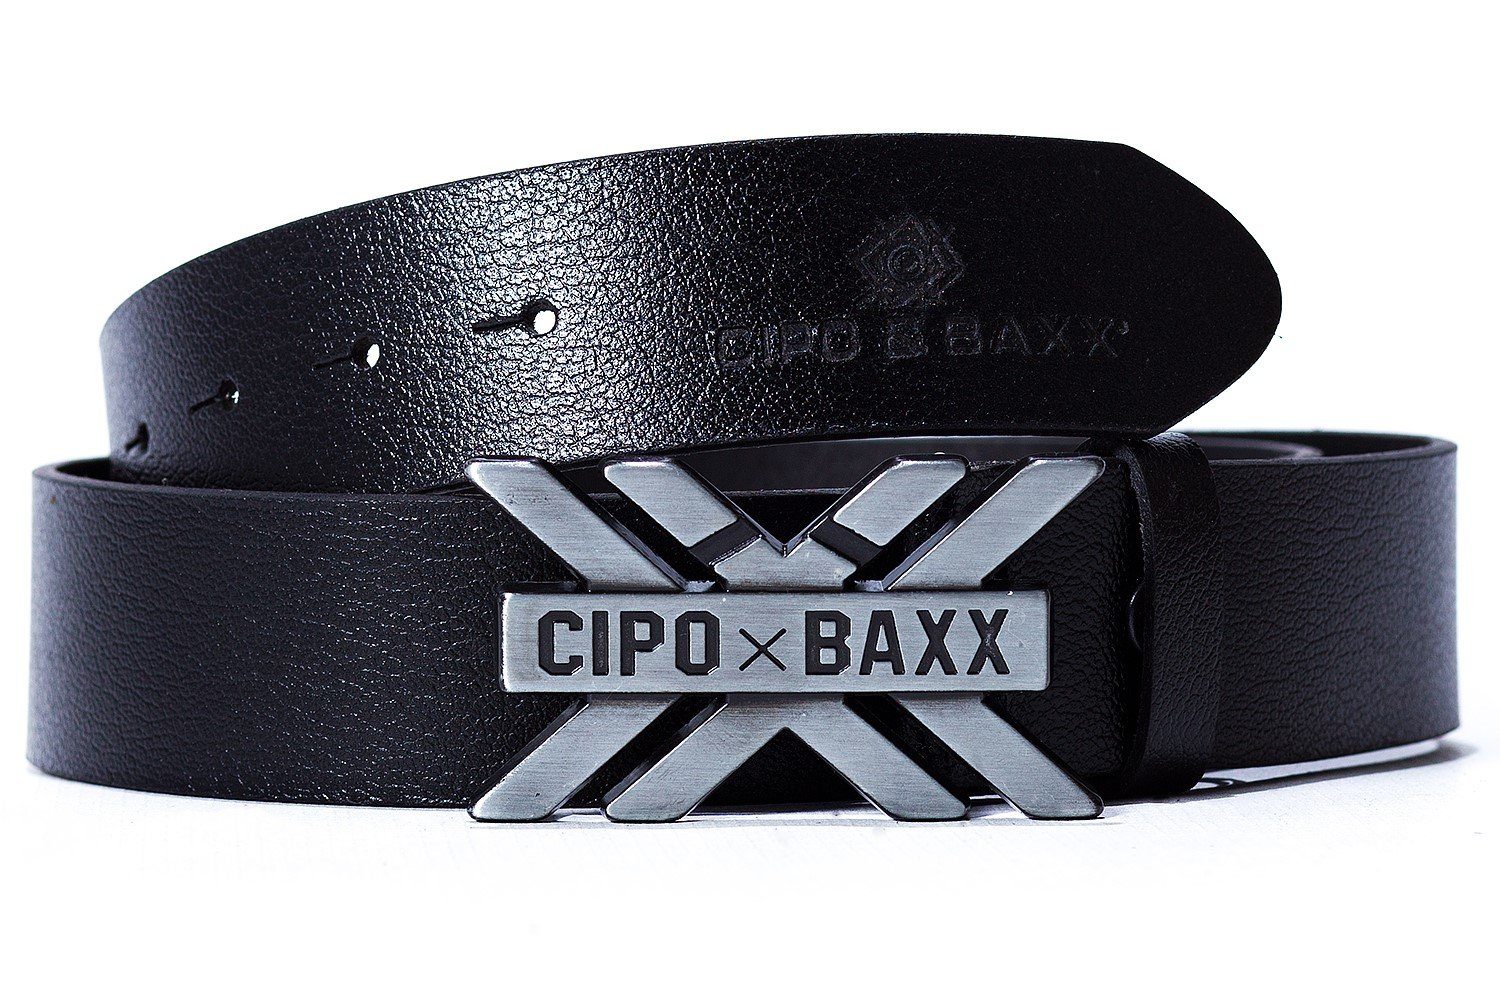 Metall Schnalle mit & Cipo Eleganter Ledergürtel schwarz BA-CG147 einer Gürtel gebürsteten aus Baxx